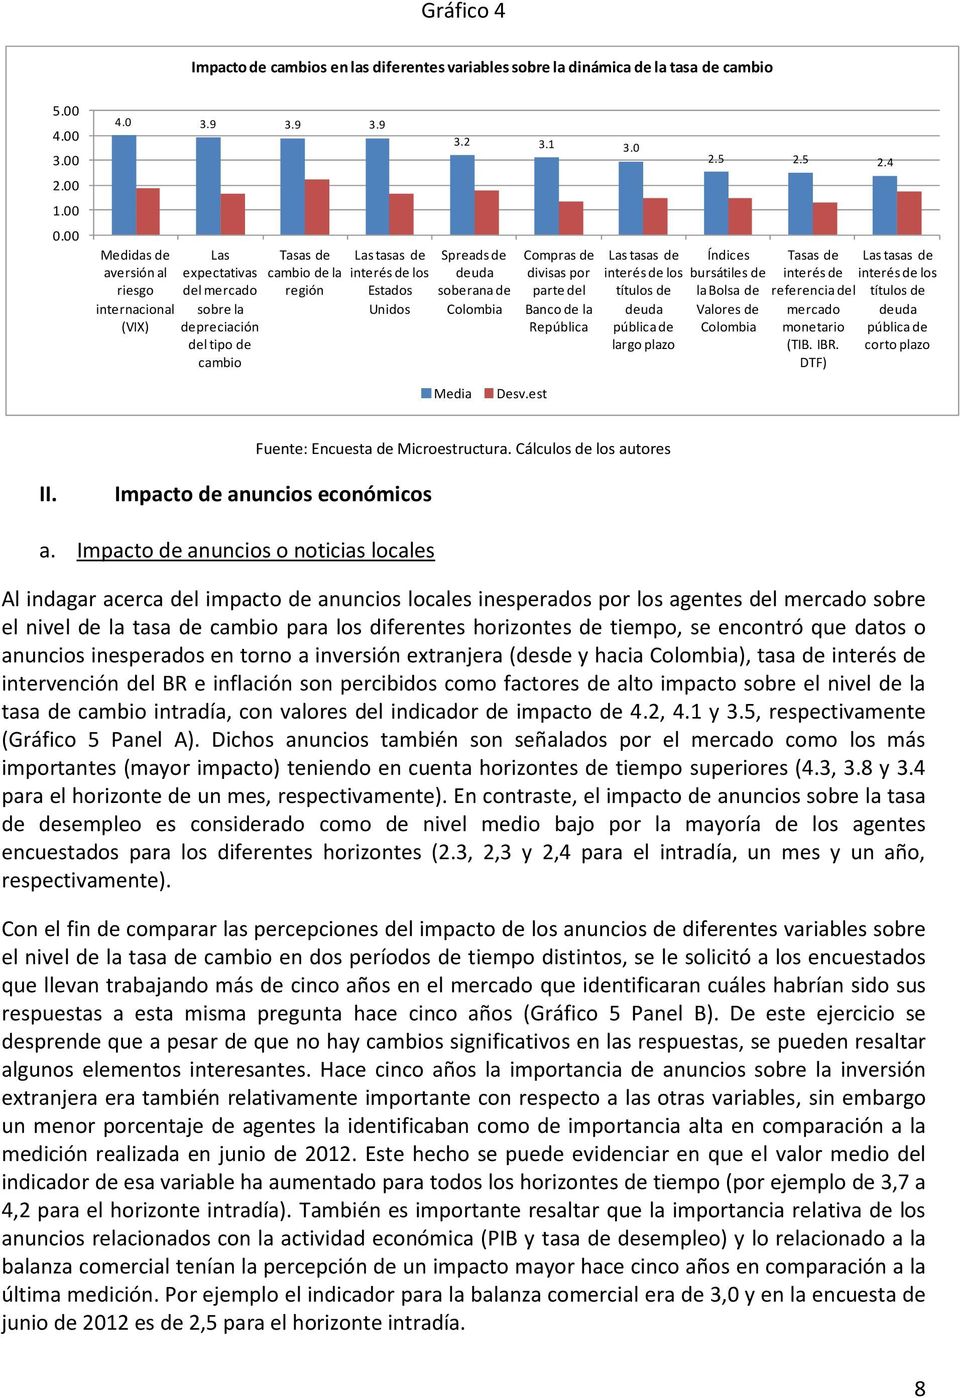 2 3.1 3.0 Spreads de deuda soberana de Colombia Compras de divisas por parte del Banco de la República Las tasas de interés de los títulos de deuda pública de largo plazo 2.5 2.